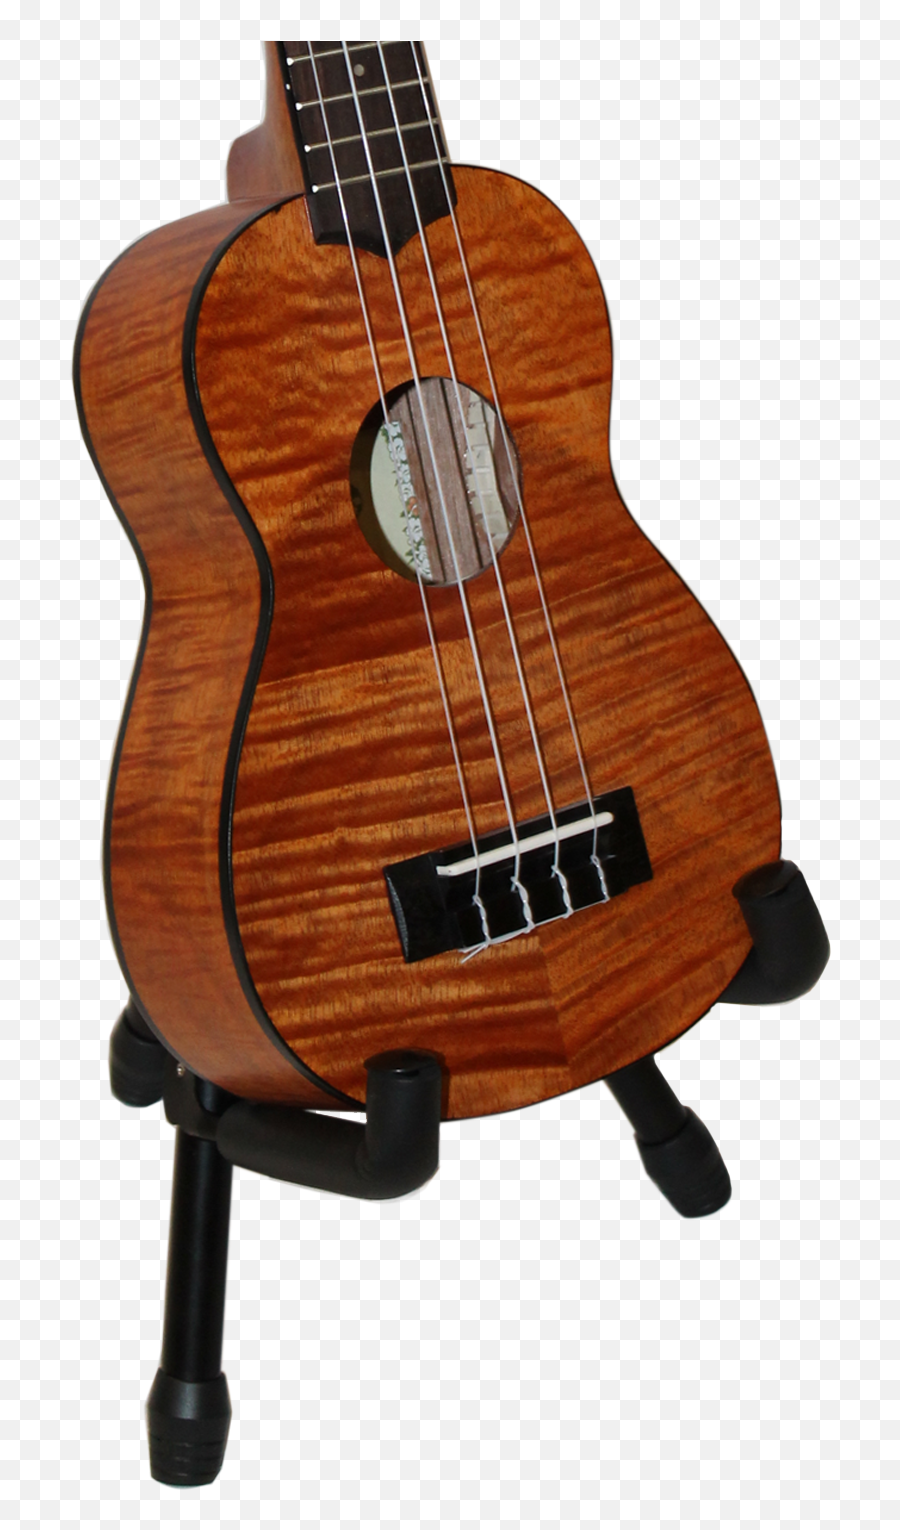 Metal Ukulele Stand W Ukulele - Acoustic Guitar Guitar And Stand Transparent Backrpund Emoji,Ukulele Clipart